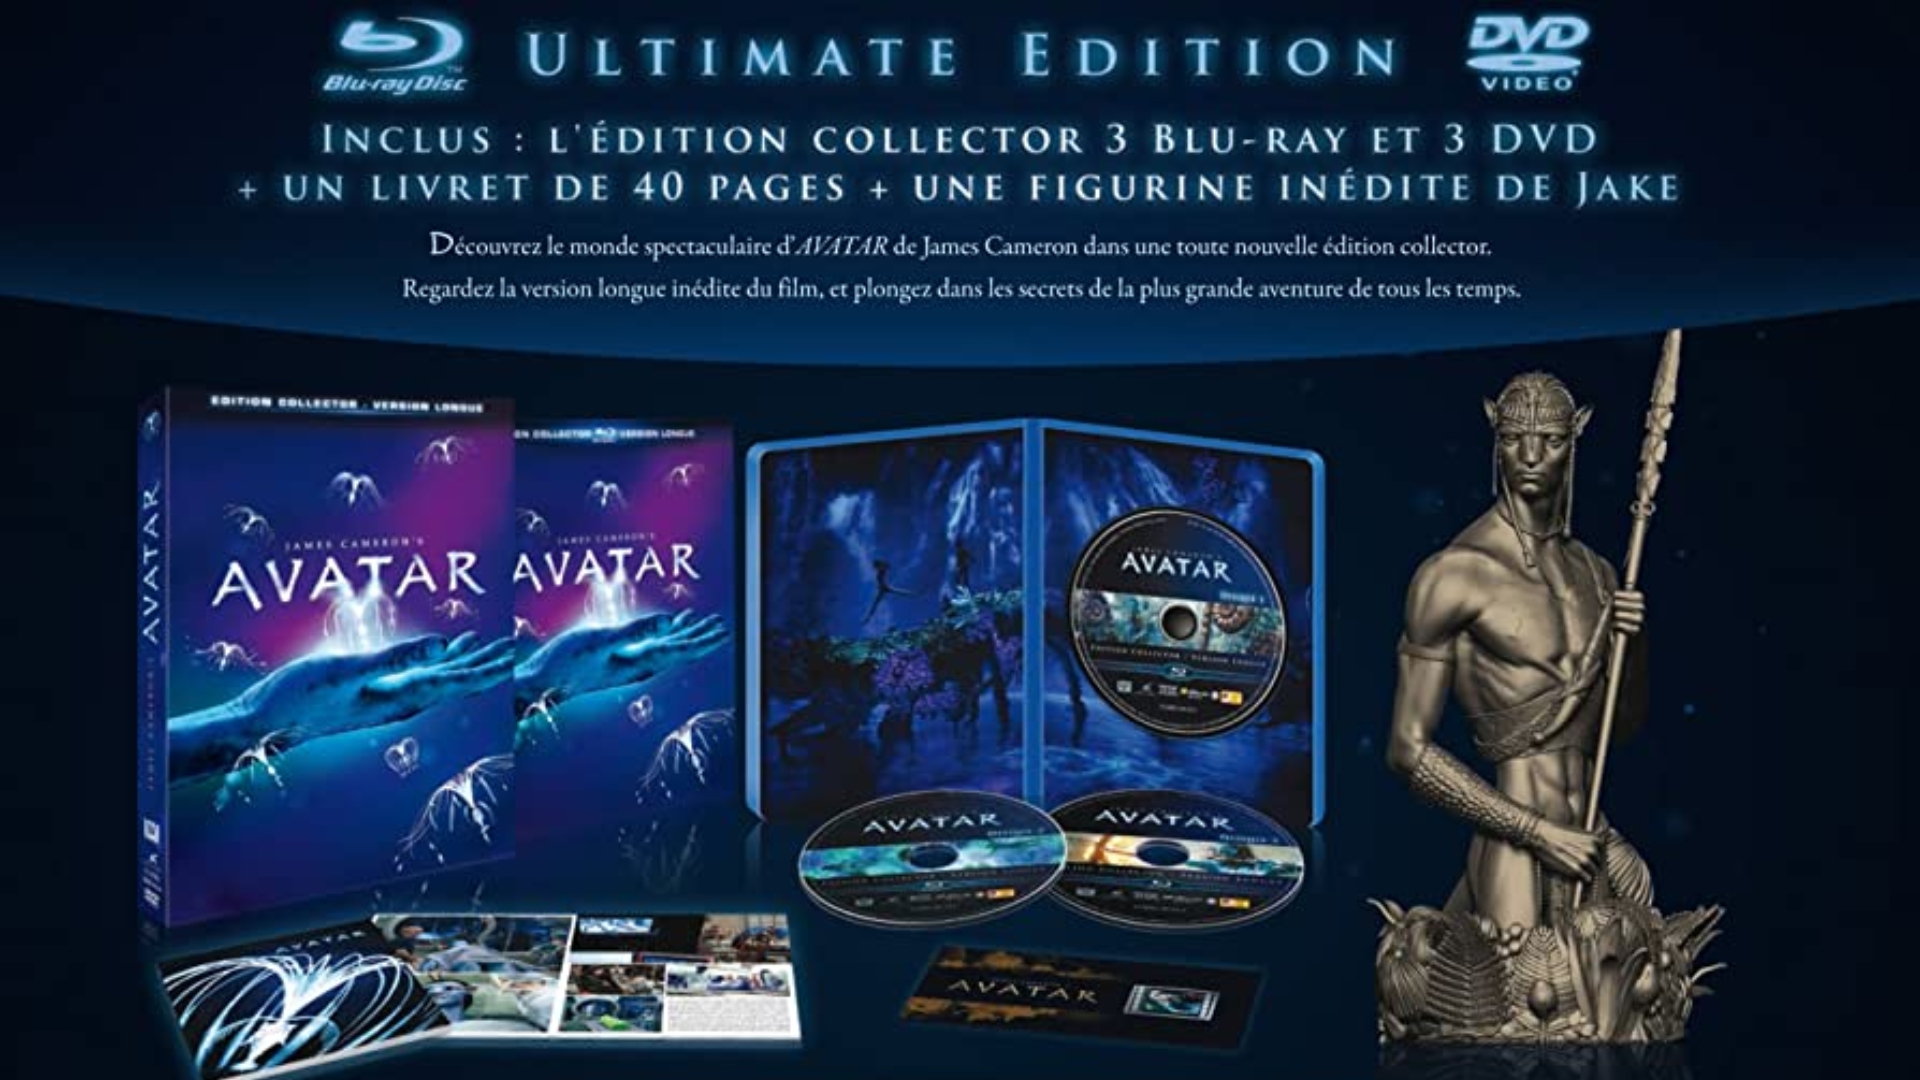 Дюна часть вторая imax. Star Wars Blu ray коллекционное издание. Аватар коллекционное издание. Blu ray диски коллекционные издания. Коллекционное издание DVD.